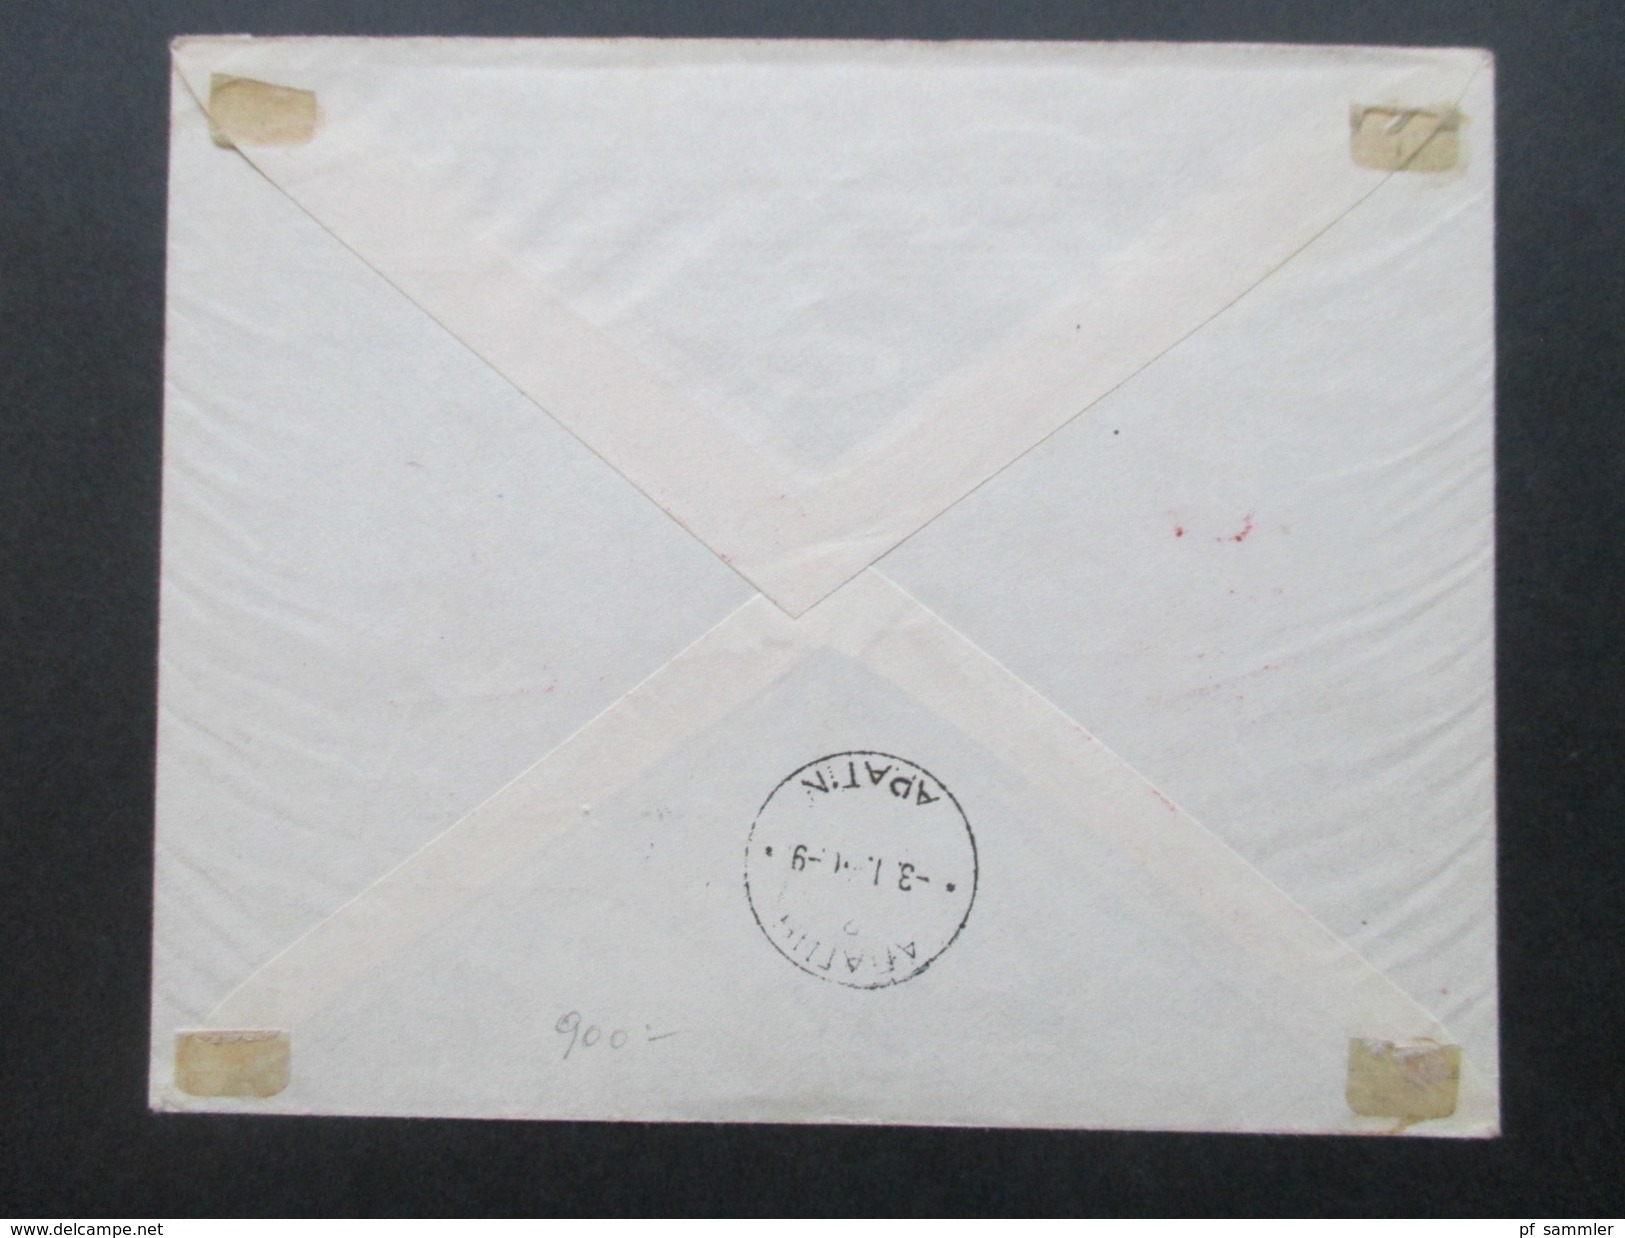 Jugoslawien Königreich 1940 Post Und Telegraphenbeamte Nr. 408 - 412 FDC / Einschreiben Mit Rotem Sonderstempel!! - Briefe U. Dokumente